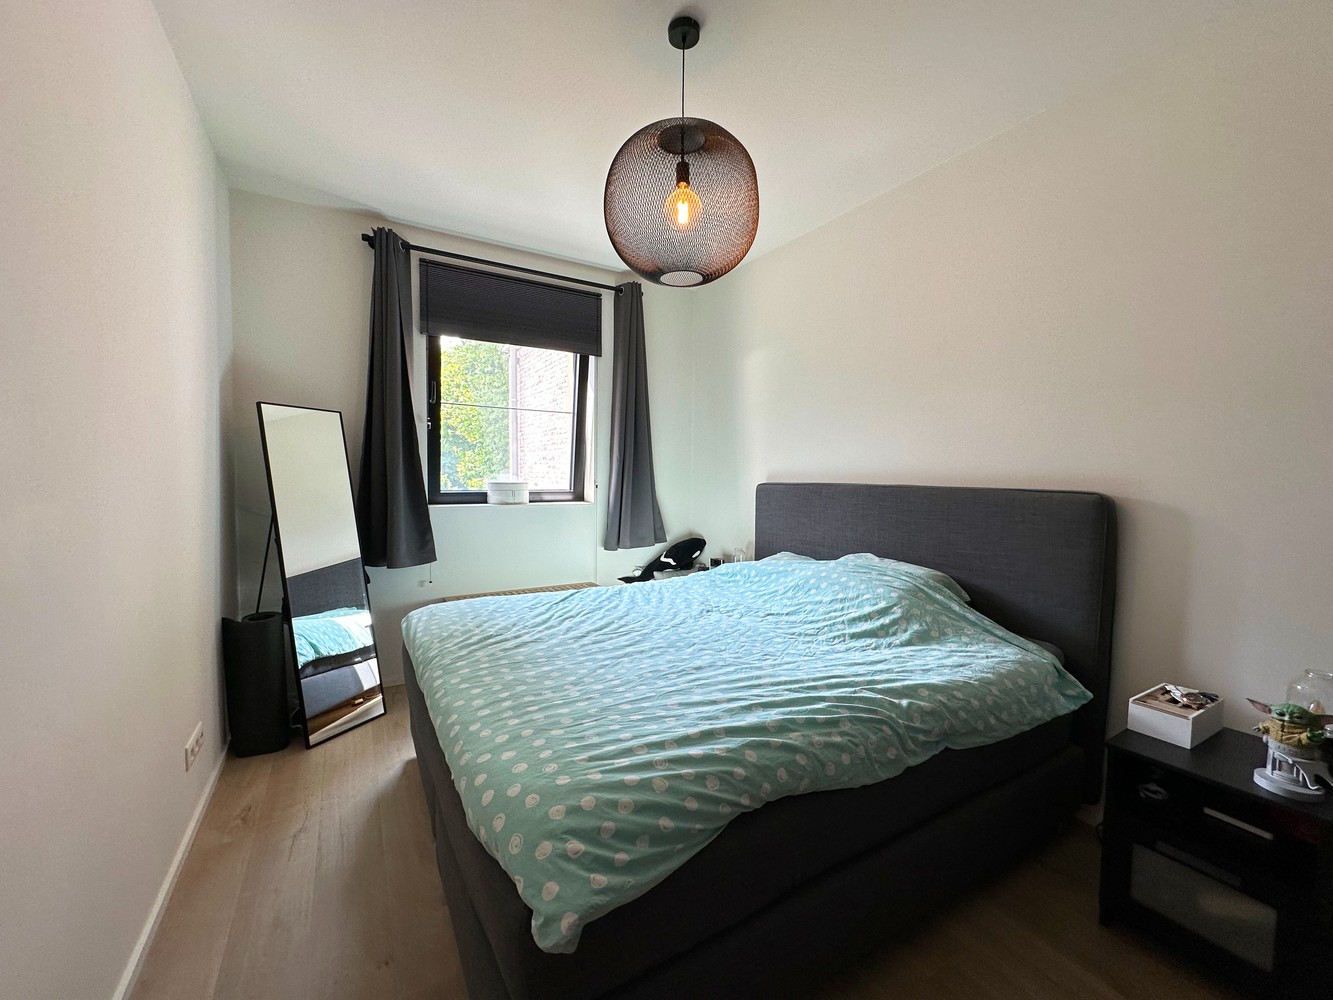 Stijlvol afgewerkt appartement met 2 slaapkamers, terras & autostaanplaats/garagebox in Wijnegem! foto 8